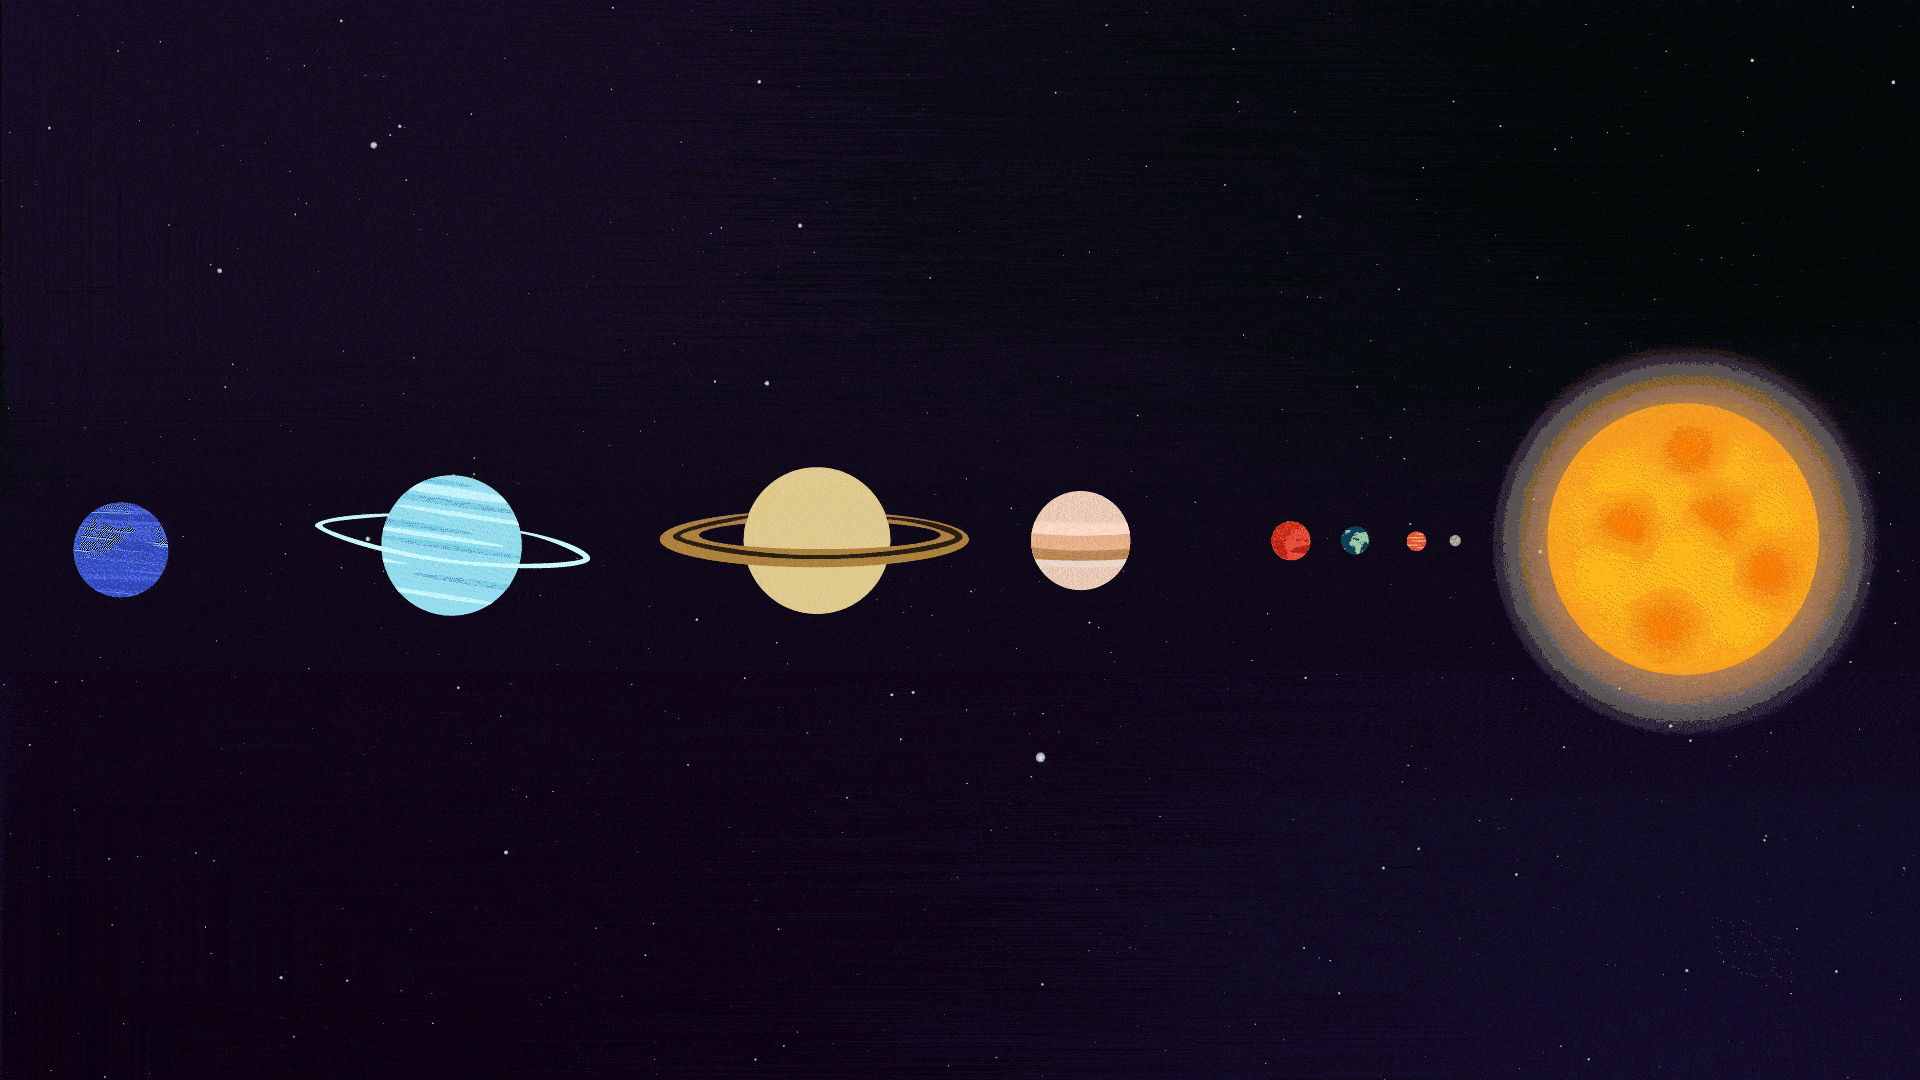 La planète Saturne dans le système solaire // Source : Nino Barbey pour Numerama